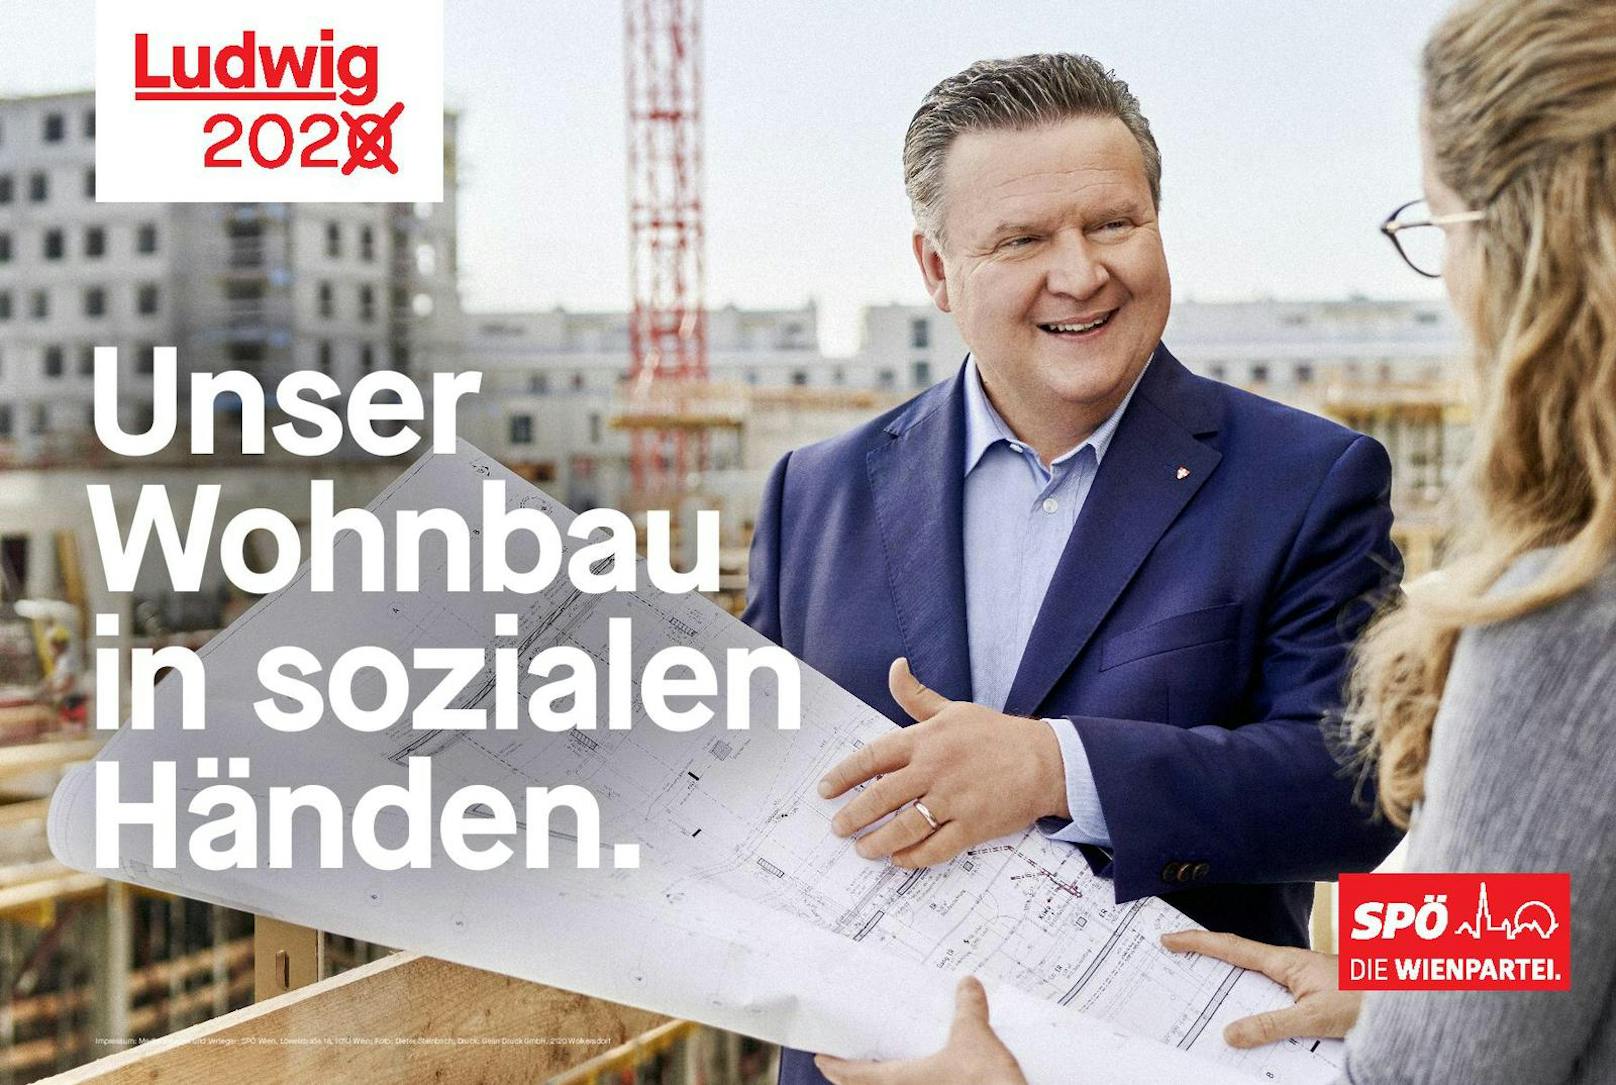 Die Botschaft der SPÖ ist klar: Wien ist in den Händen von Bürgermeister Michael Ludwig am besten aufgehoben.